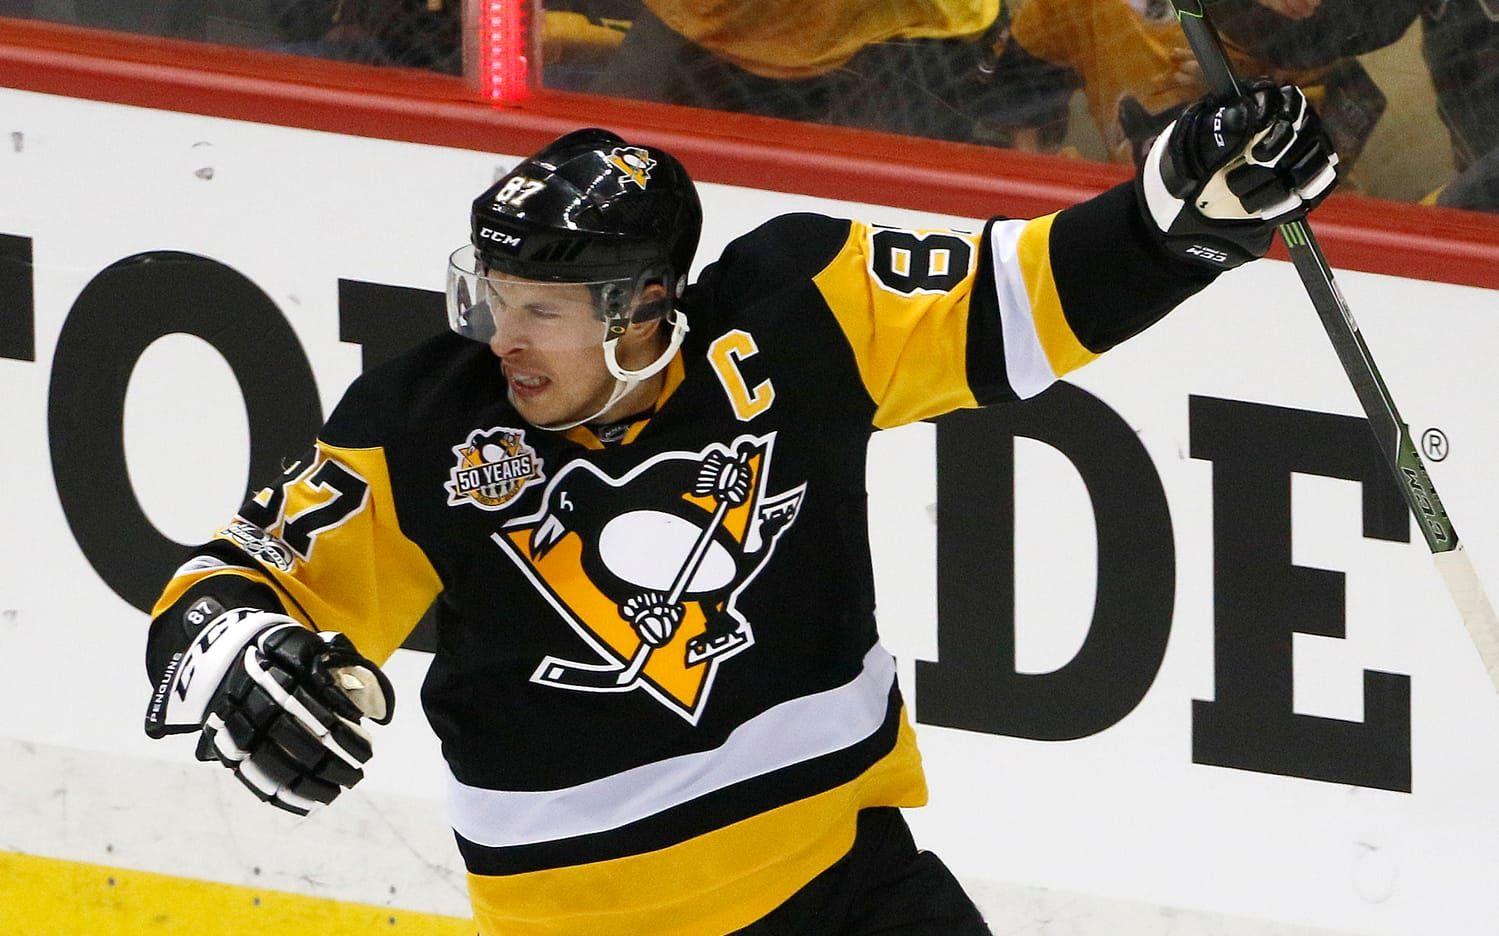 08-09. Tvåa den säsongen blev Sidney Crosby i Pittsburgh Penguins med 80.6 miljoner kronor.